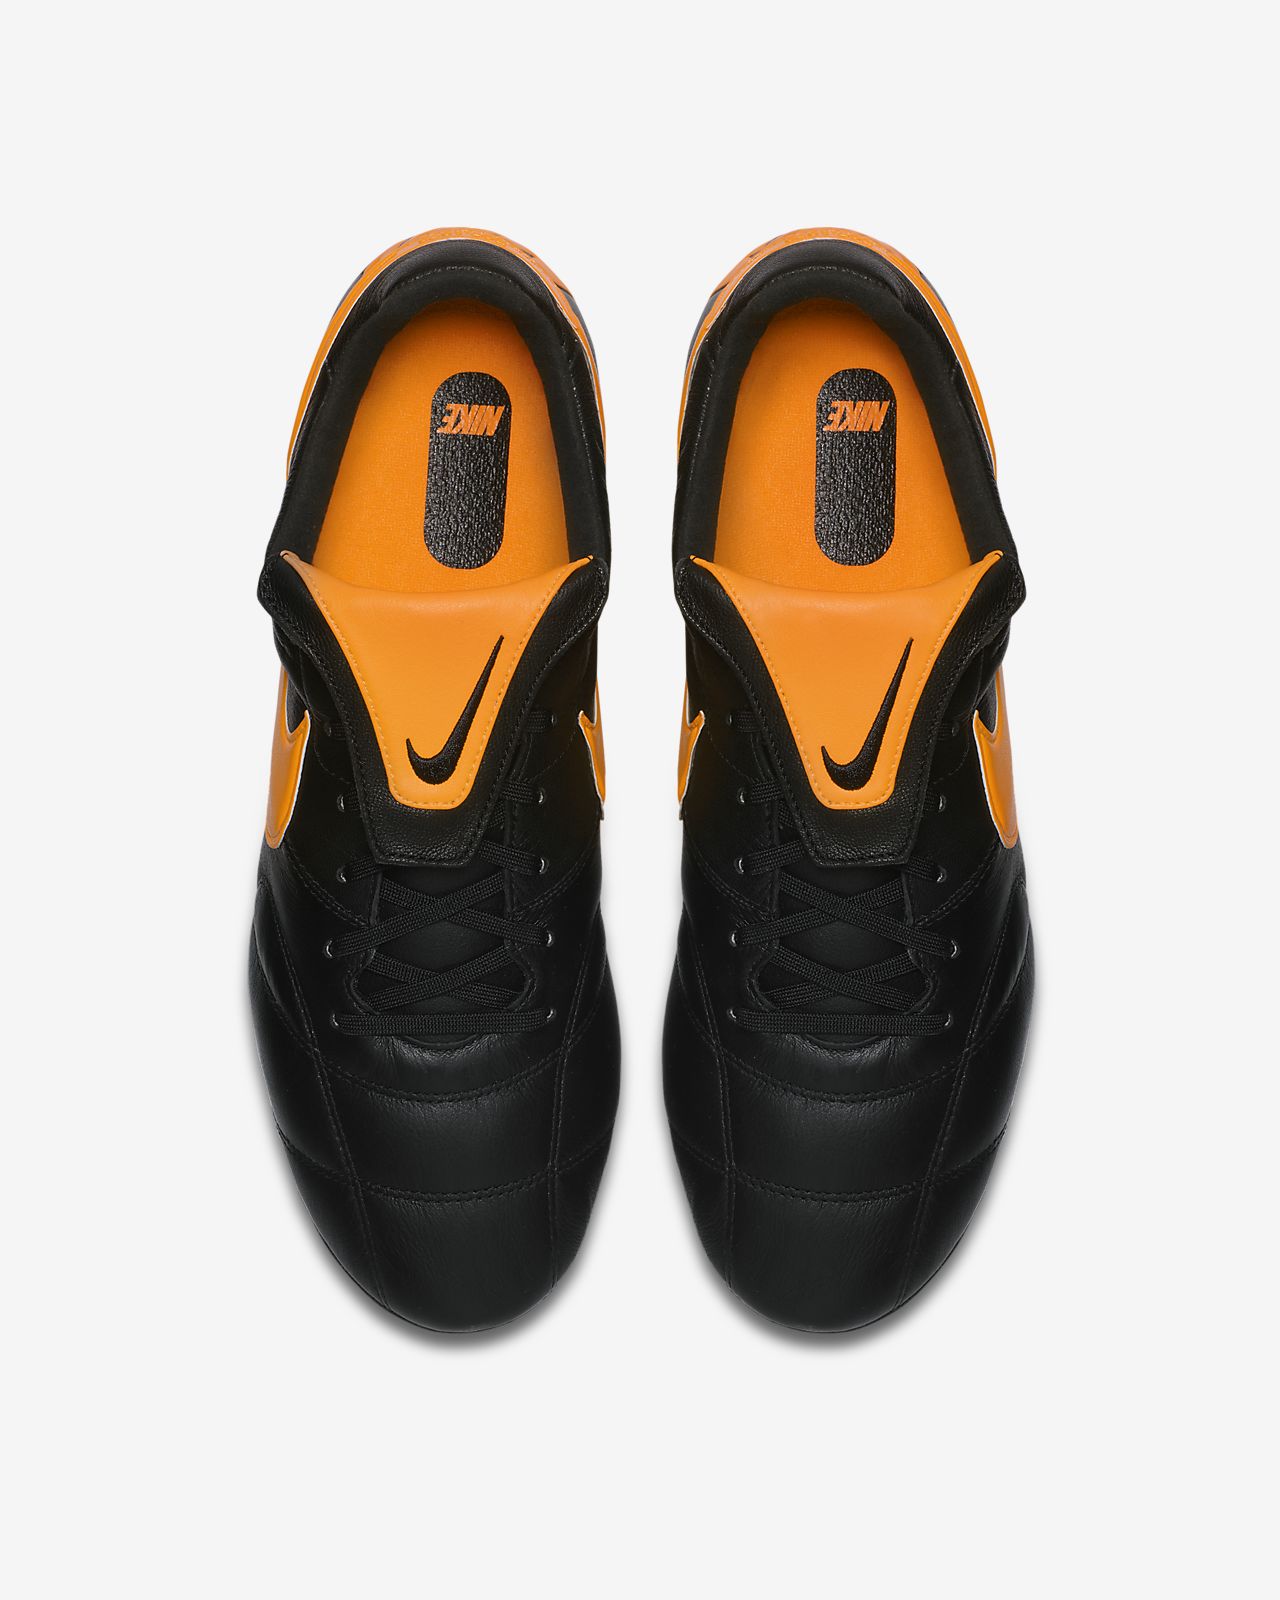 Chaussure de football à crampons pour terrain gras Nike Premier II Anti Clog Traction SG PRO